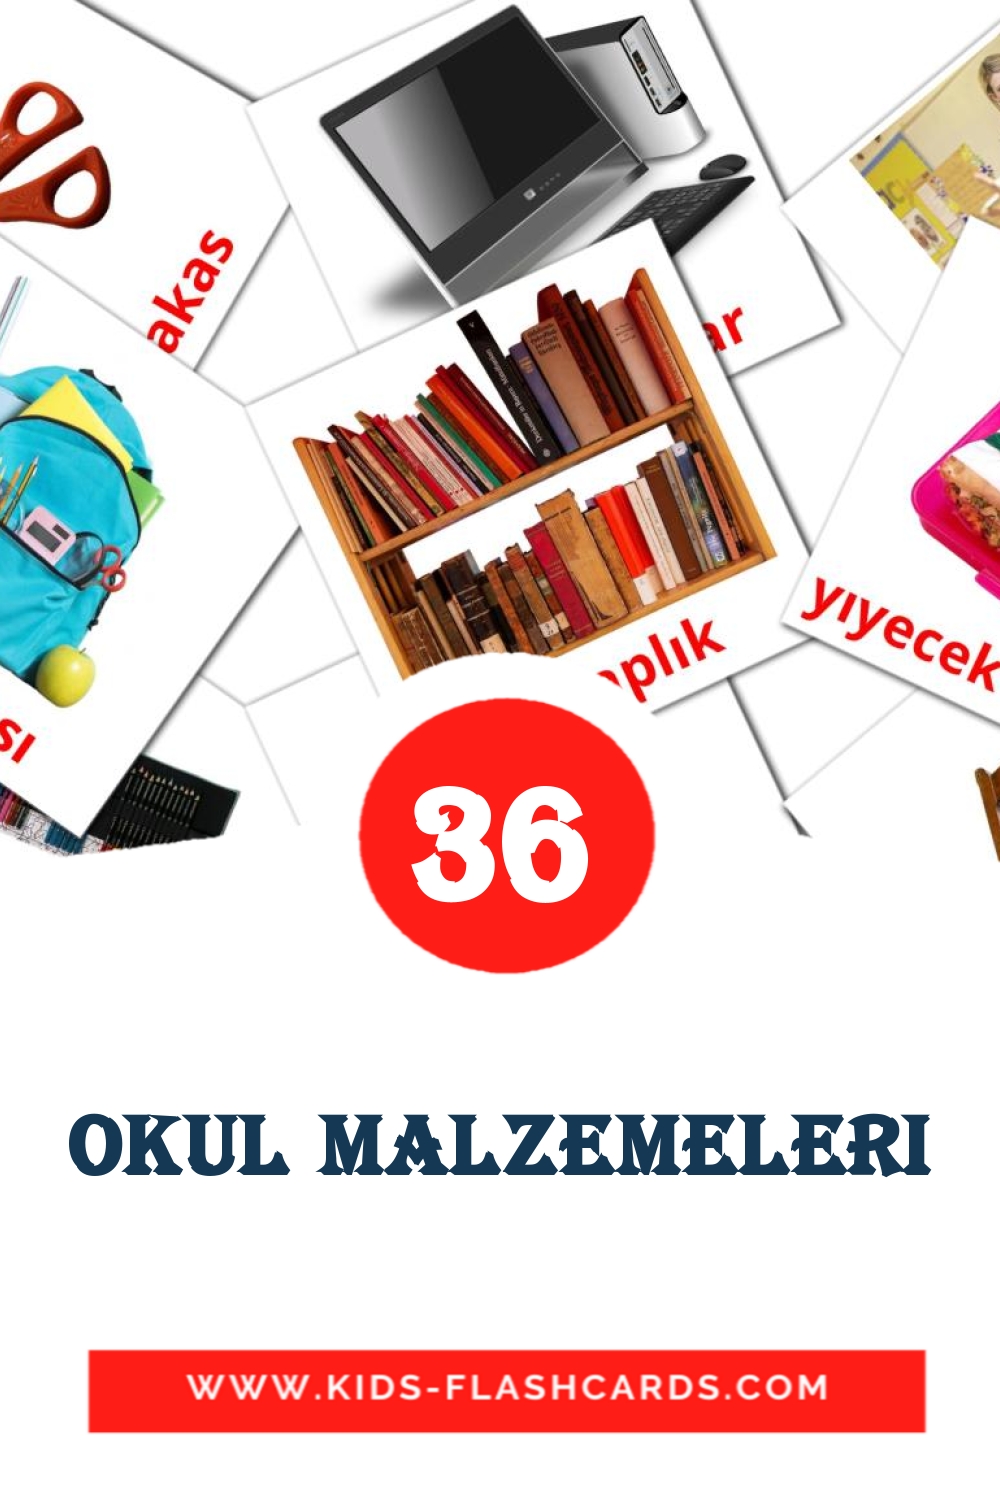 Okul malzemeleri на турецком для Детского Сада (36 карточек)